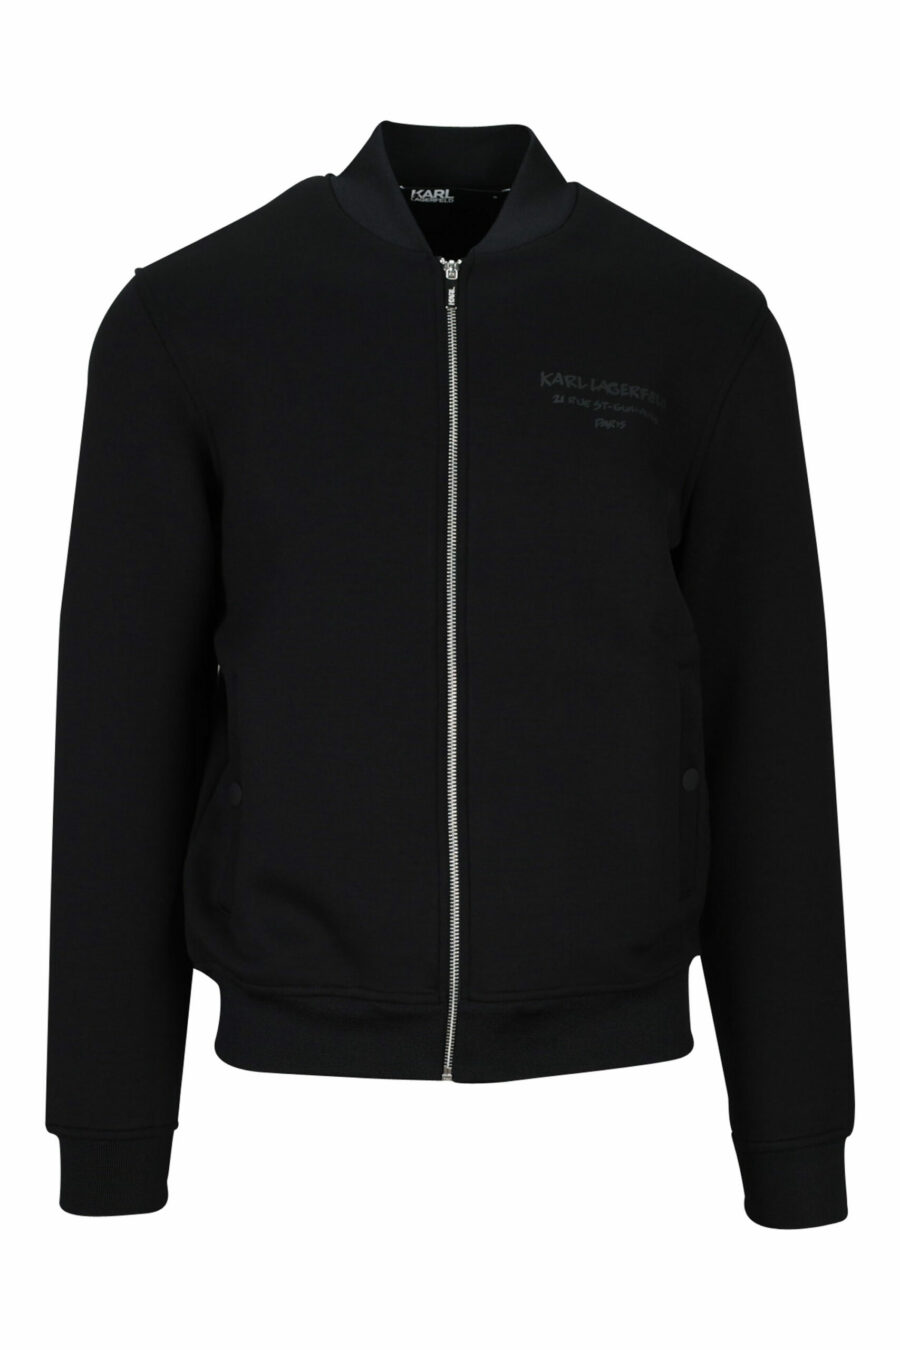 Schwarzes Sweatshirt mit Reißverschluss und Mini-Logo - 4062226395656 skaliert